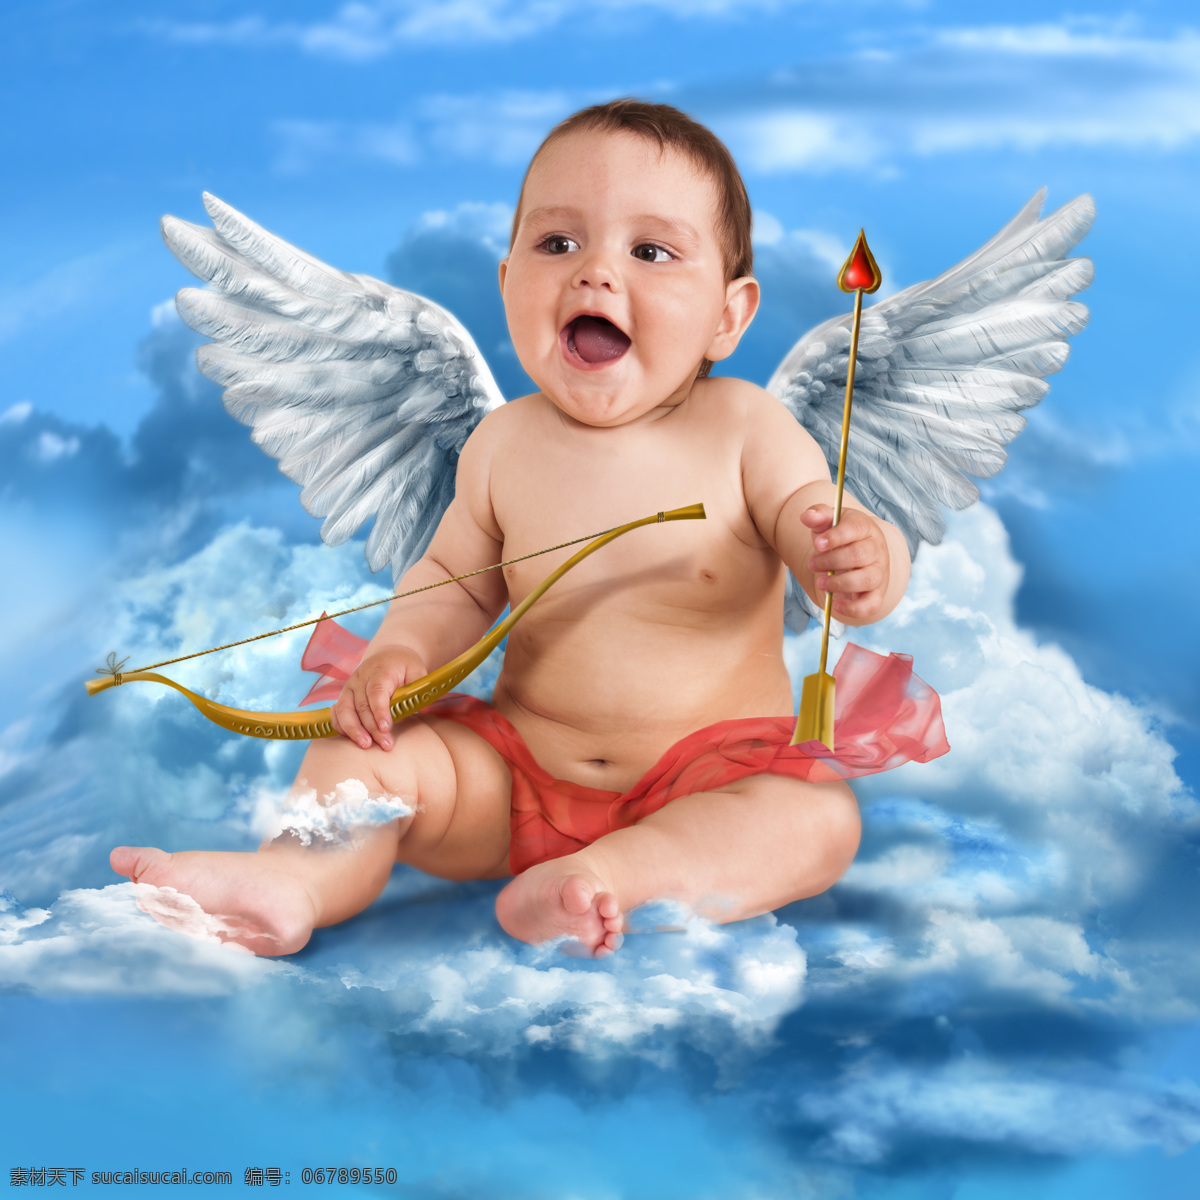 坐在 云彩 中 弓箭 天使 婴儿 宝宝 天空 小天使 婴儿天使 宝宝天使 幼儿 宝贝 娃娃 孩子 可爱 婴儿宝宝设计 儿童幼儿 人物图库